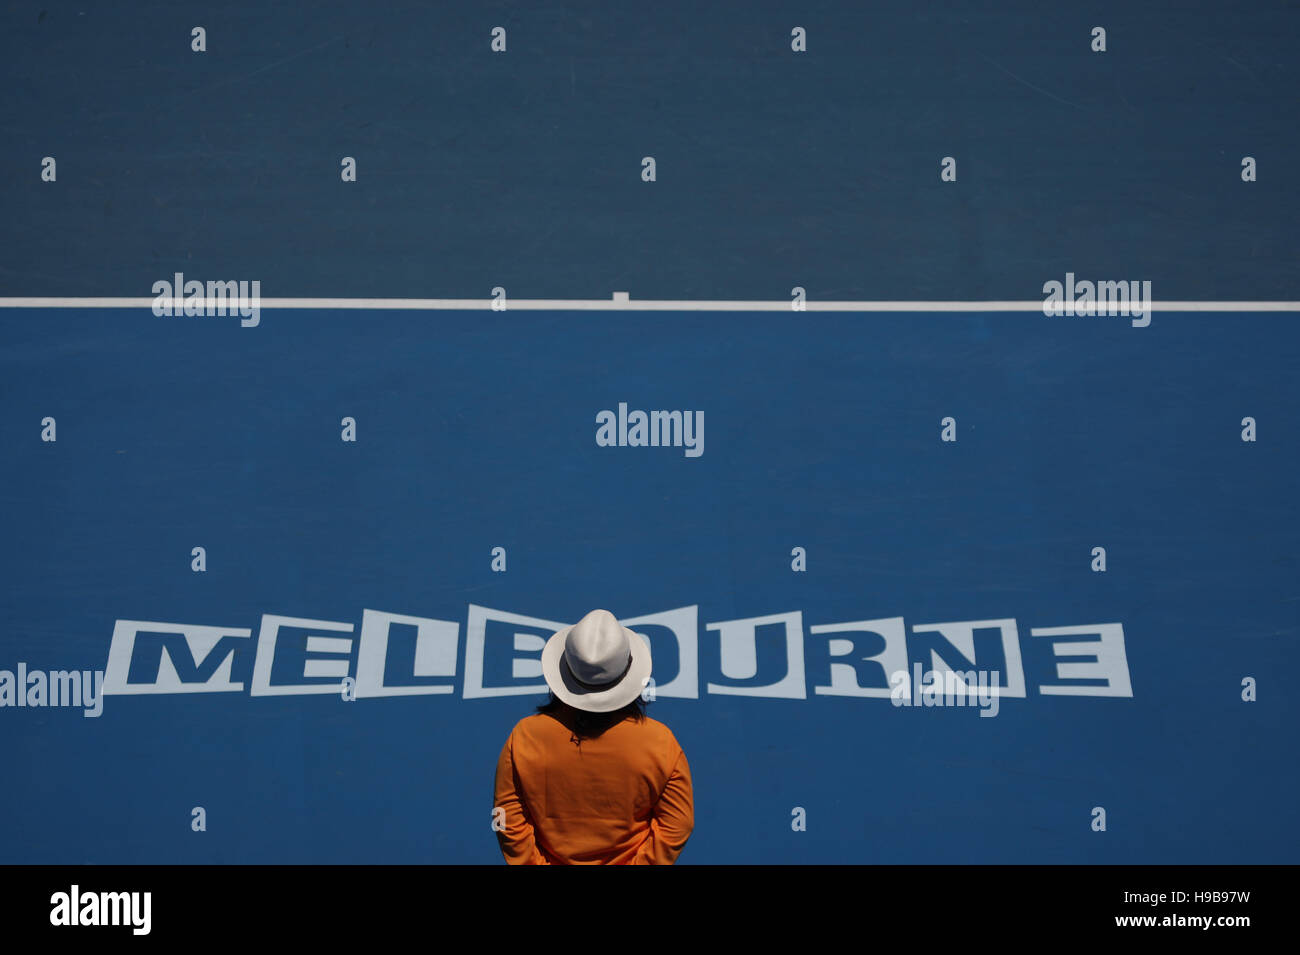 Schriftzug "Melbourne", Australian Open 2009 Grand-Slam-Turnier, Melbourne Park, Melbourne, Australien Stockfoto